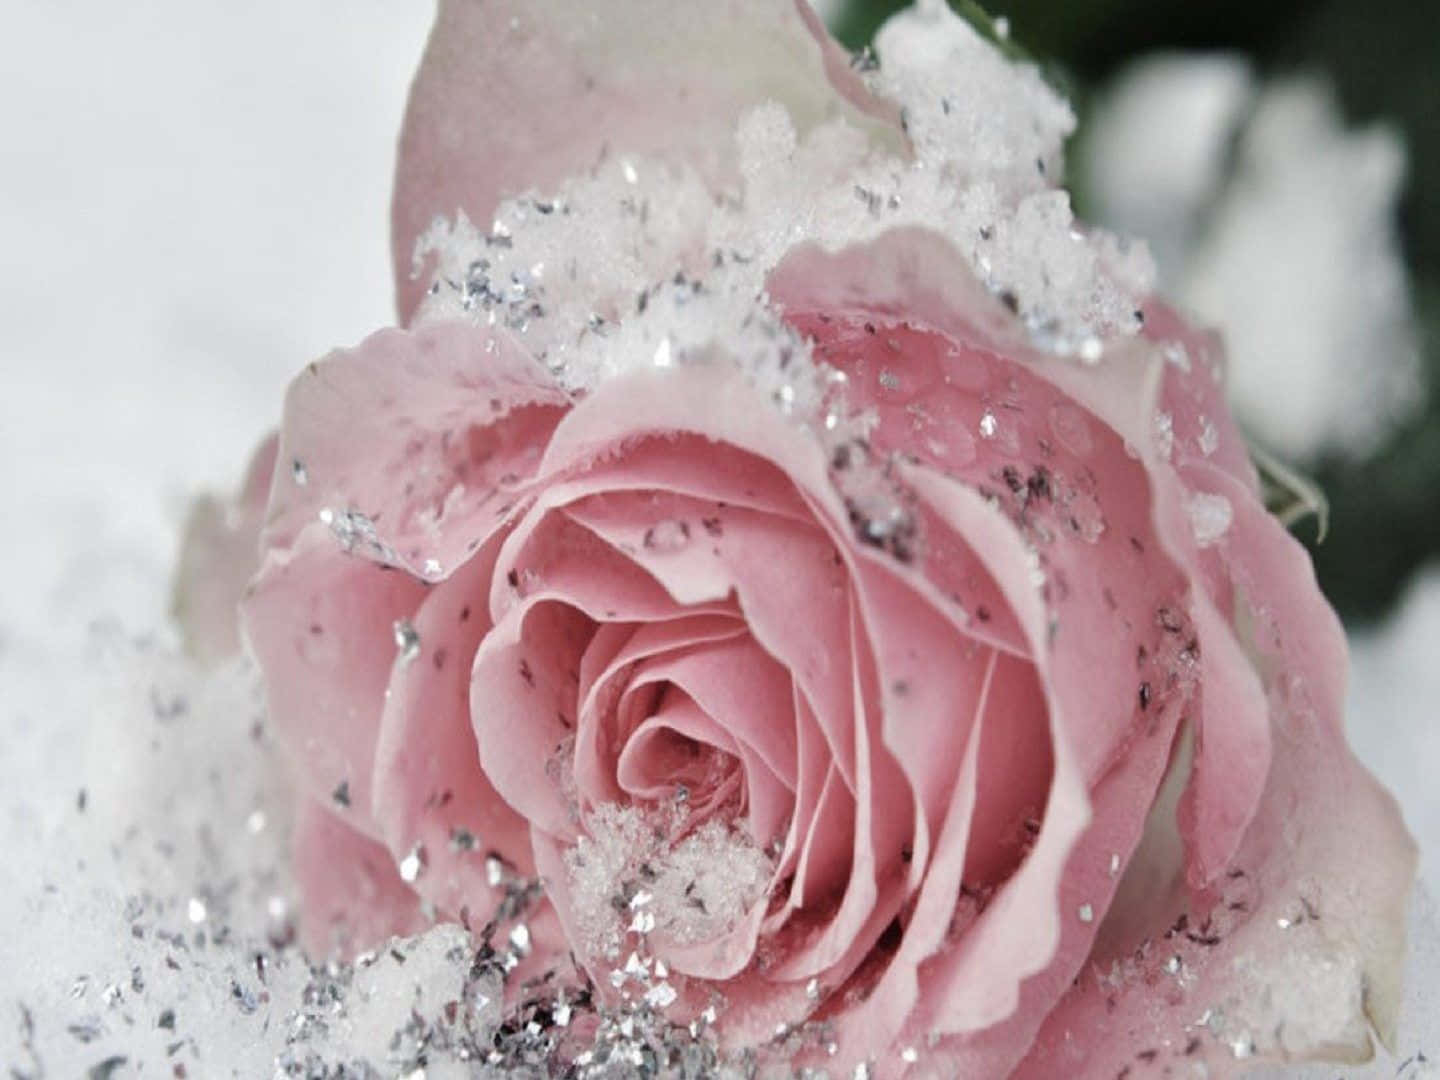 Tómateun Momento Para Apreciar La Belleza De Esta Rosa Rosa.